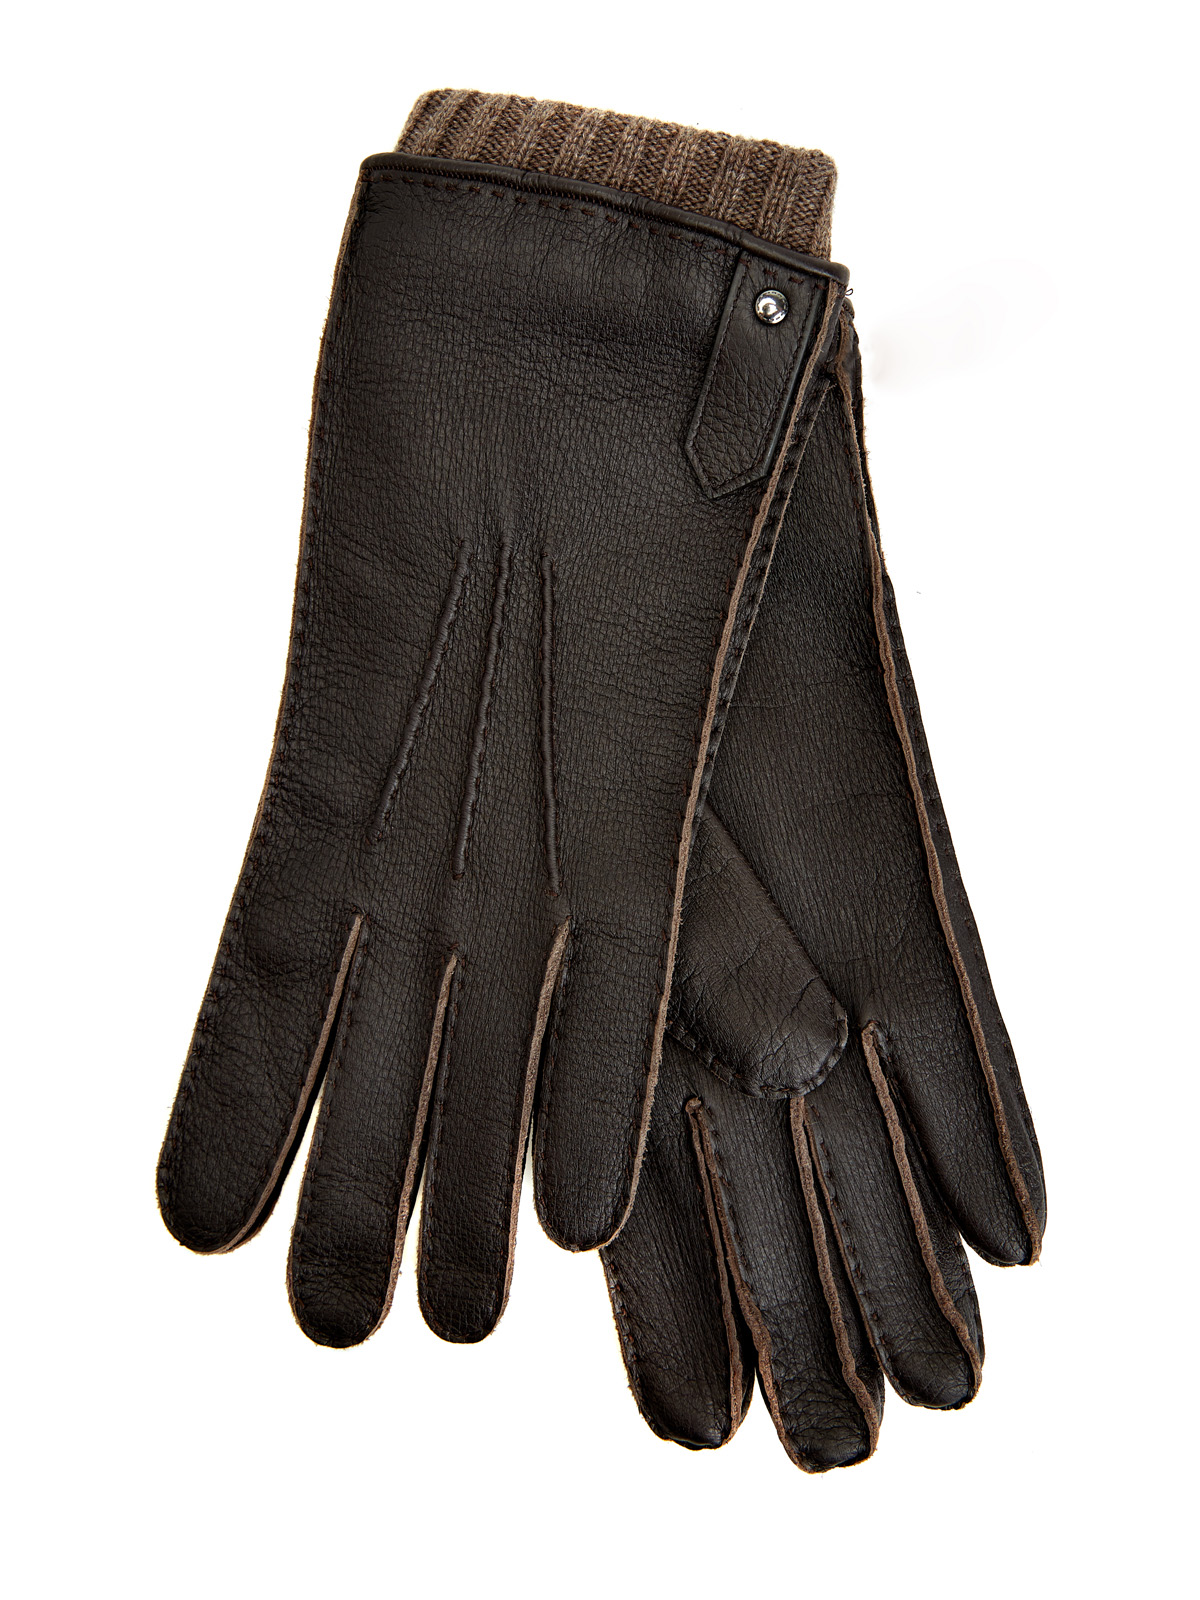 Кожаные перчатки ручной работы с отделкой из кашемира CANALI, цвет коричневый, размер M;L